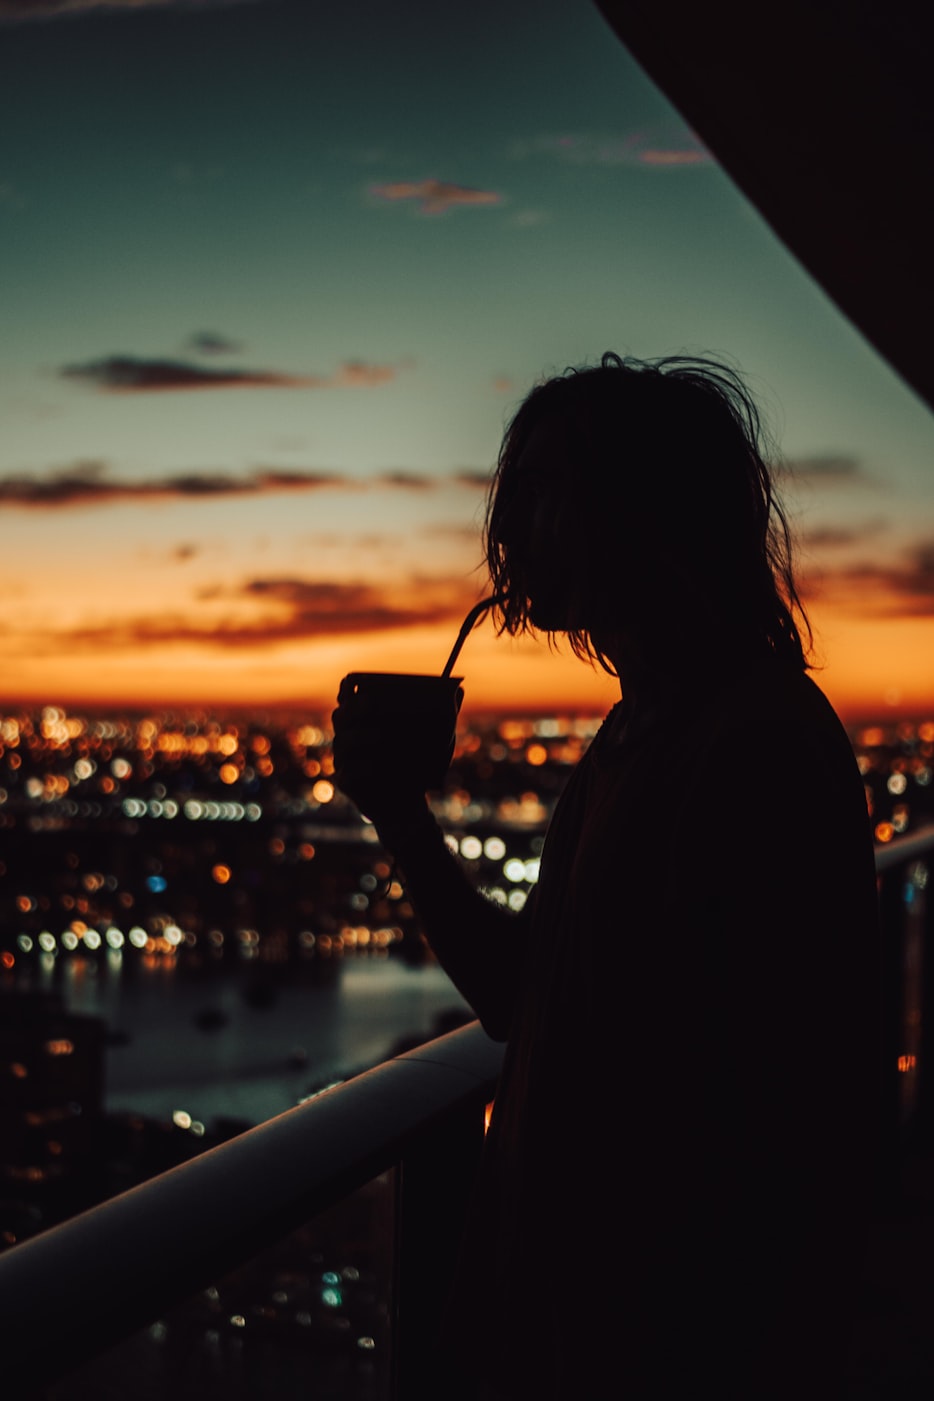 Mensch trinkt Mate Tee vor einer abendlichen Skyline